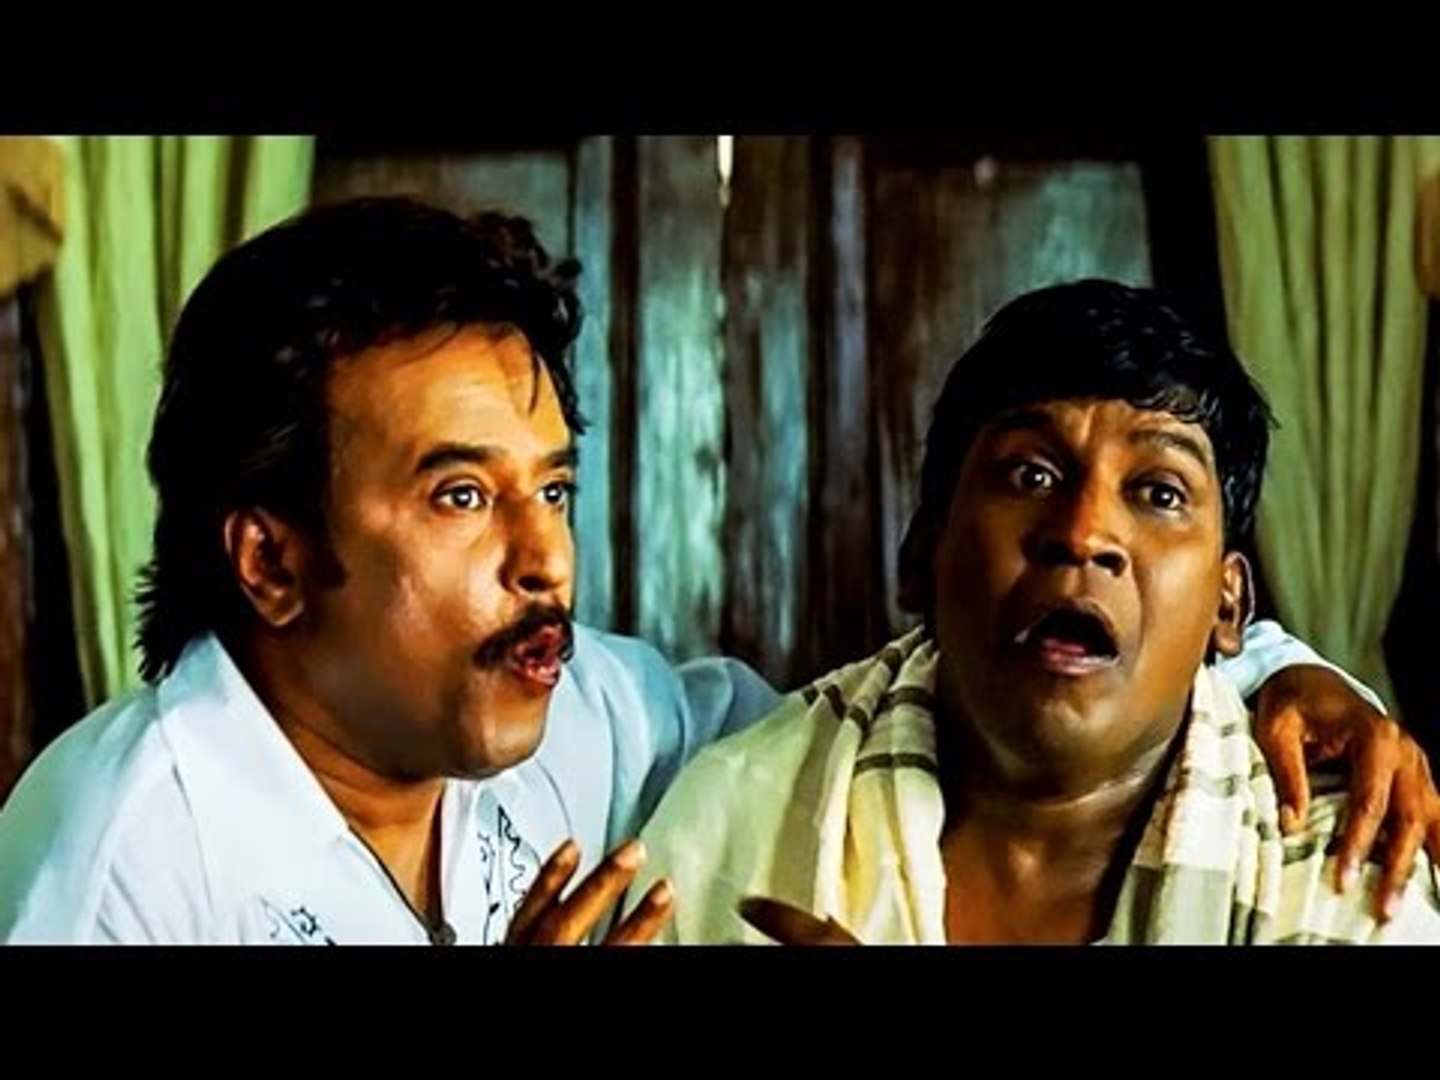 துன்பம் மறந்து வயிறு குலுங்க சிரிக்க வைக்கும் காமெடி#Vadivelu Comedy Scenes#Tamil Comedy Collections